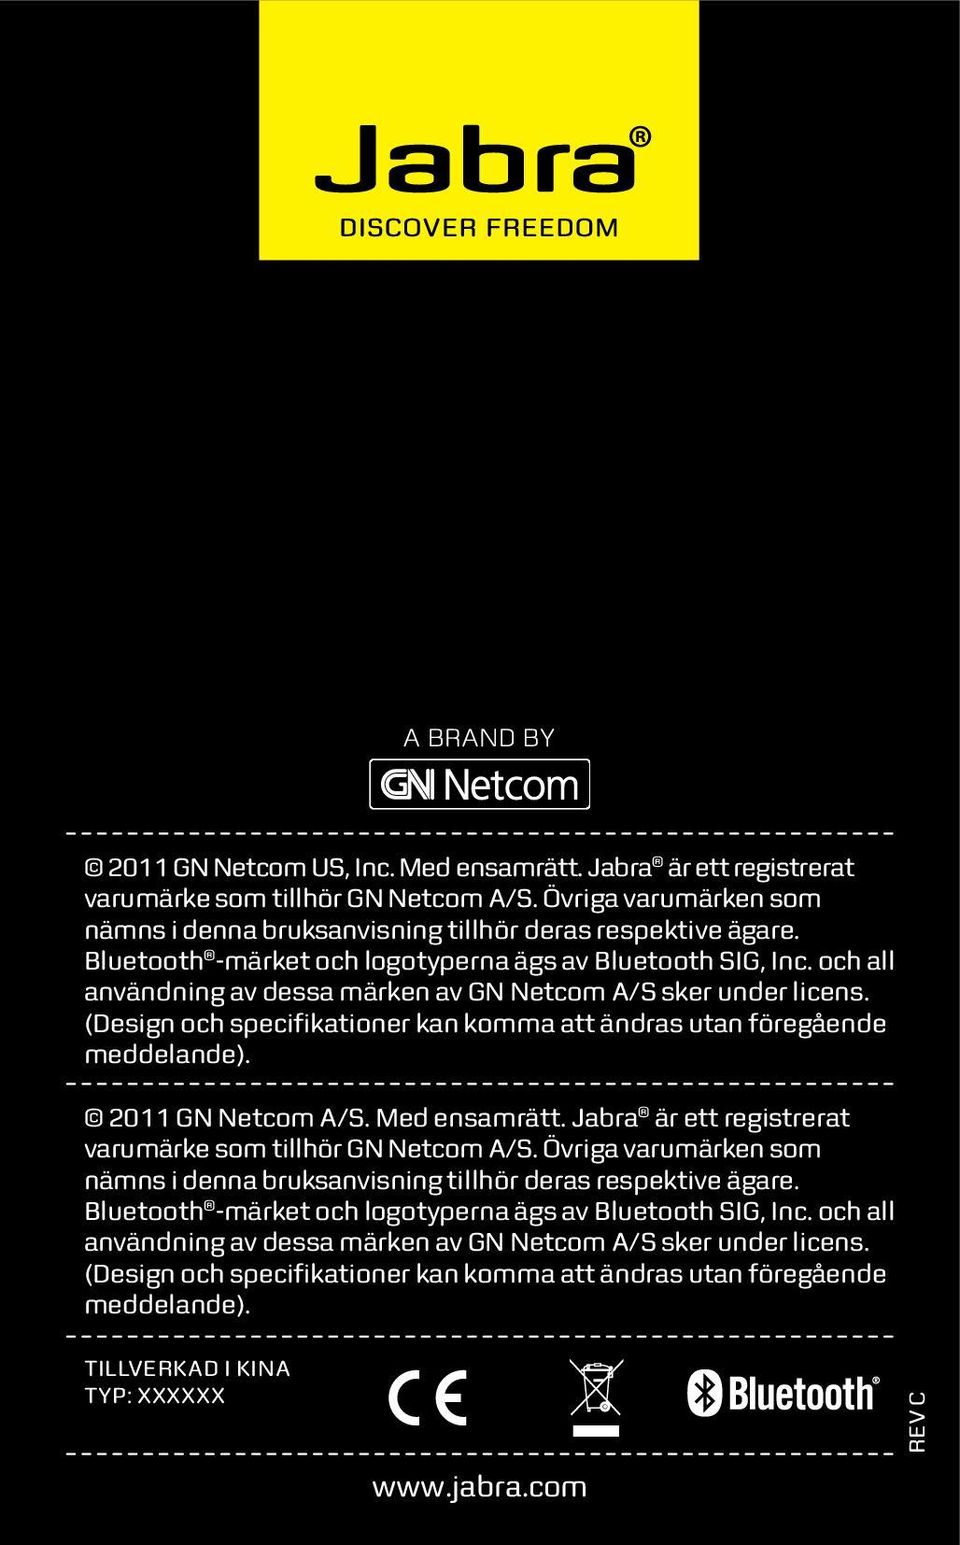 (Design och specifikationer kan komma att ändras utan föregående meddelande). 2011 GN Netcom A/S. Med ensamrätt. Jabra är ett registrerat varumärke som tillhör GN Netcom A/S.